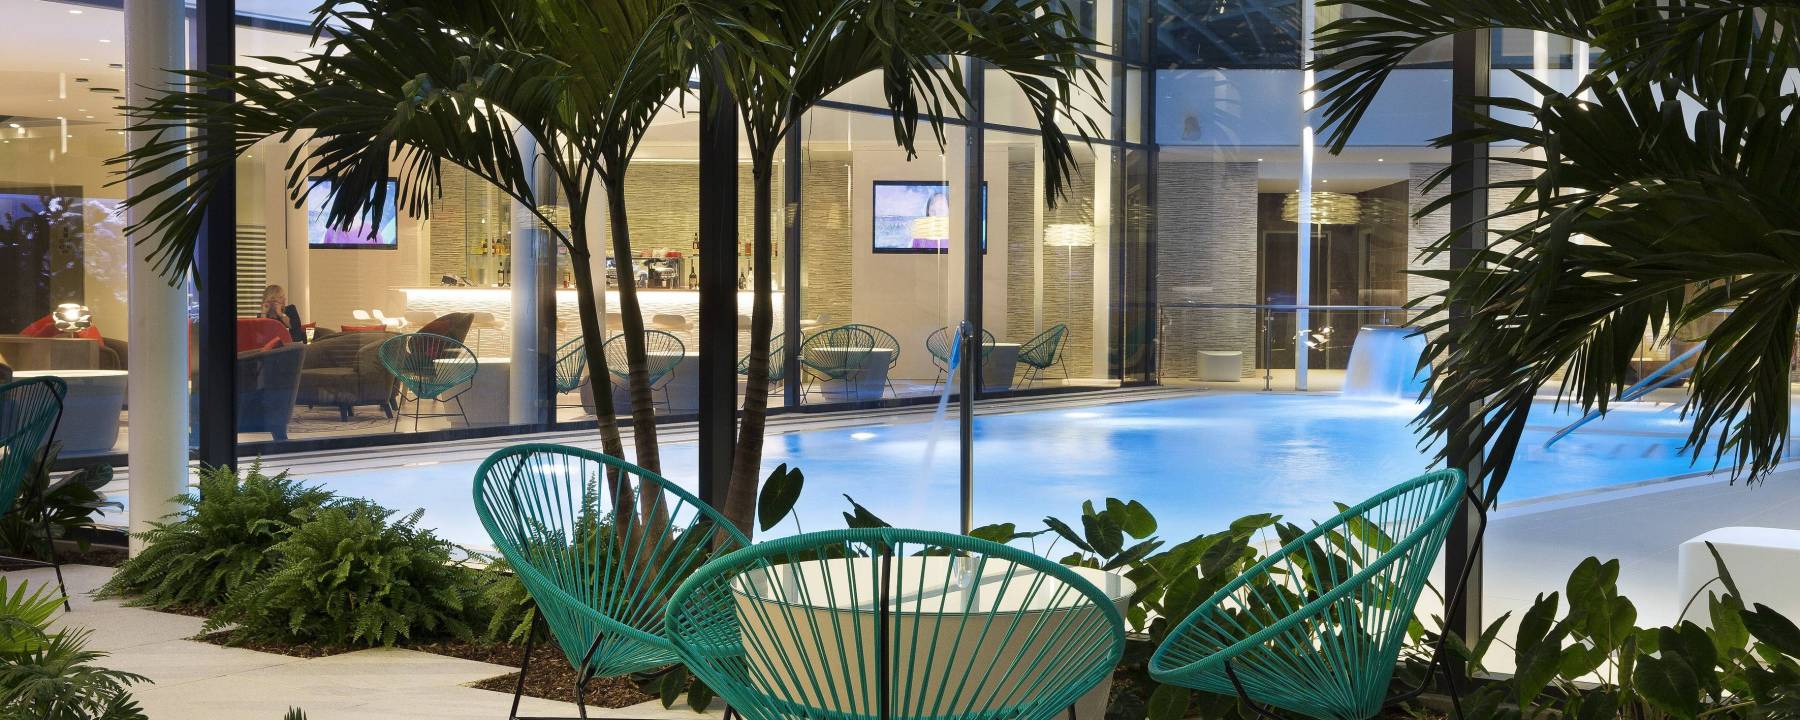 Recrutement: Responsable Restauration F/H chez Oceania Hotels à Le Mesnil-Amelot